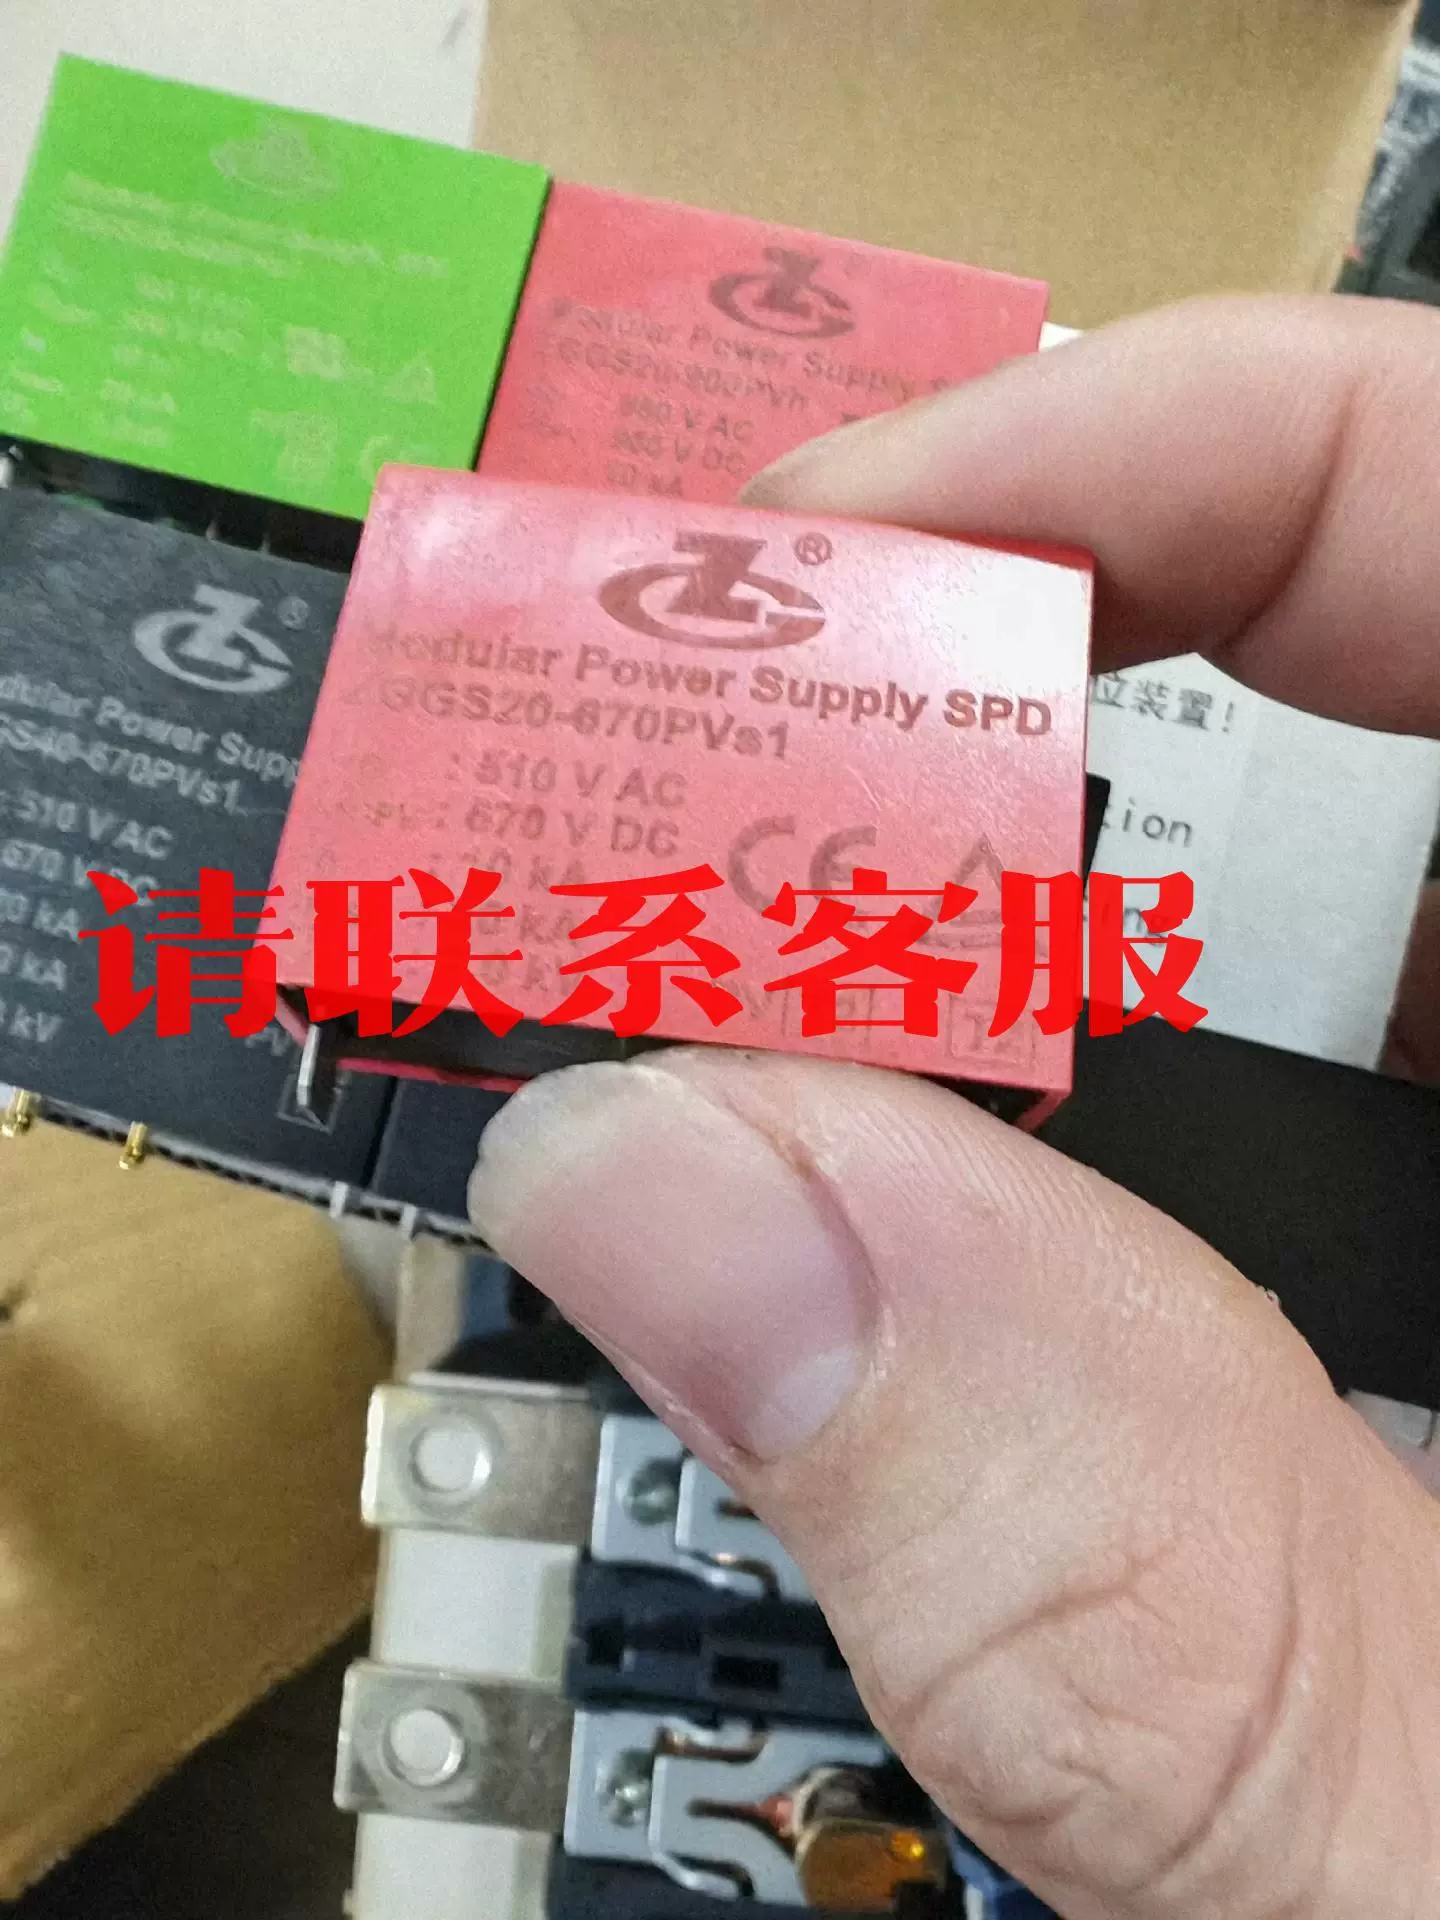 议价出售中光高科电源模块浪涌保护器ZGGS20-670PVs 1，-Taobao